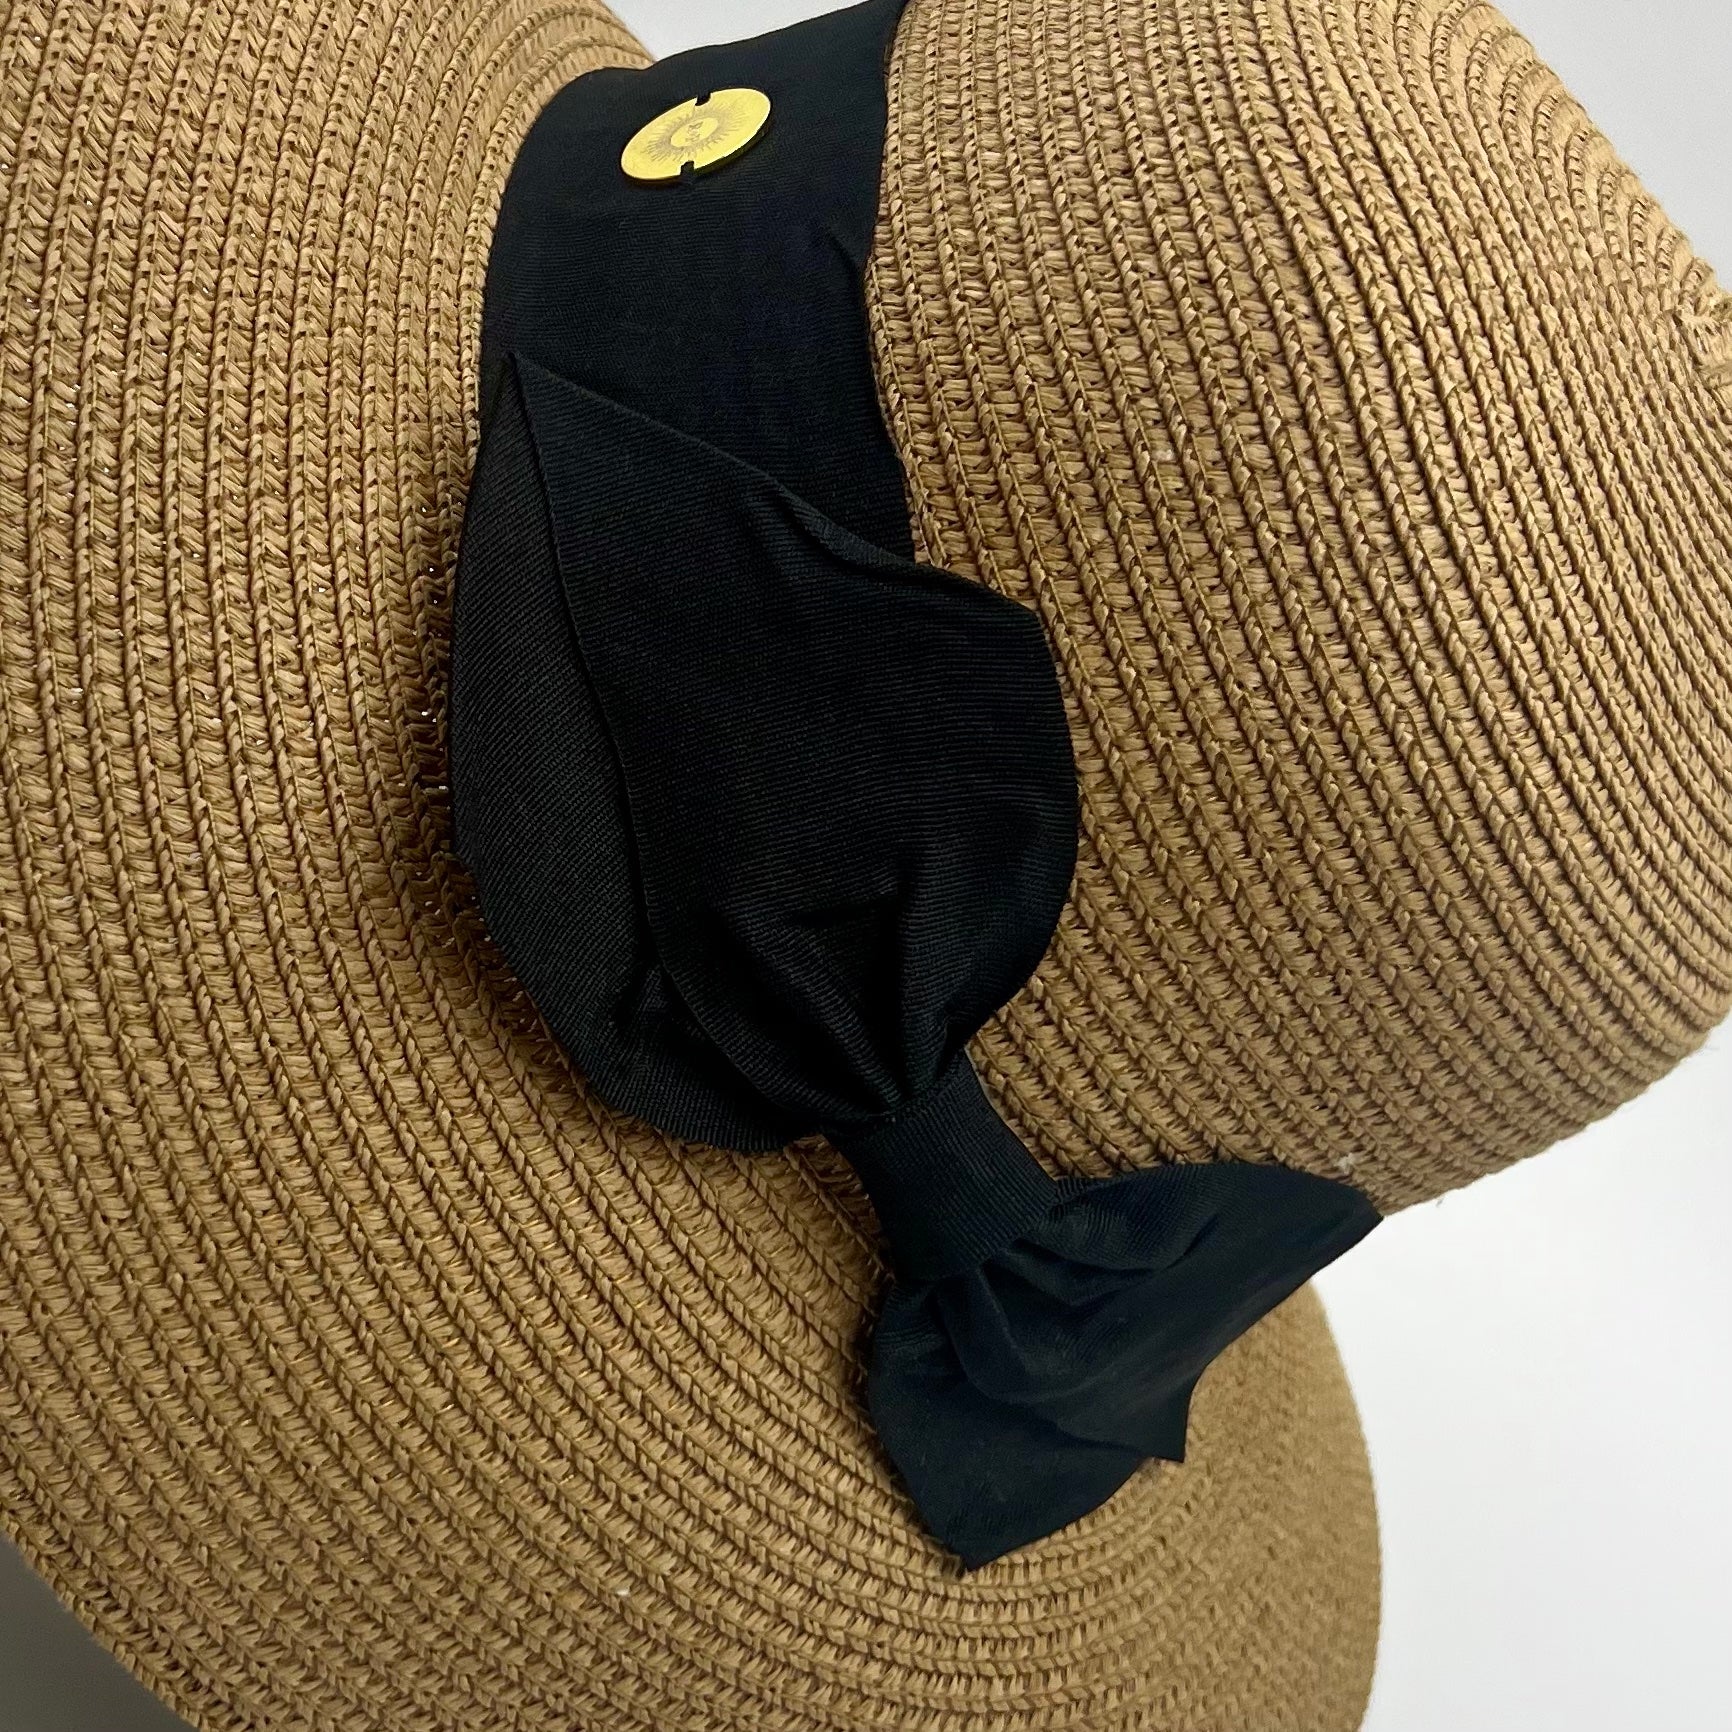 Mimi Packable Sun Hat – Rose+Pom